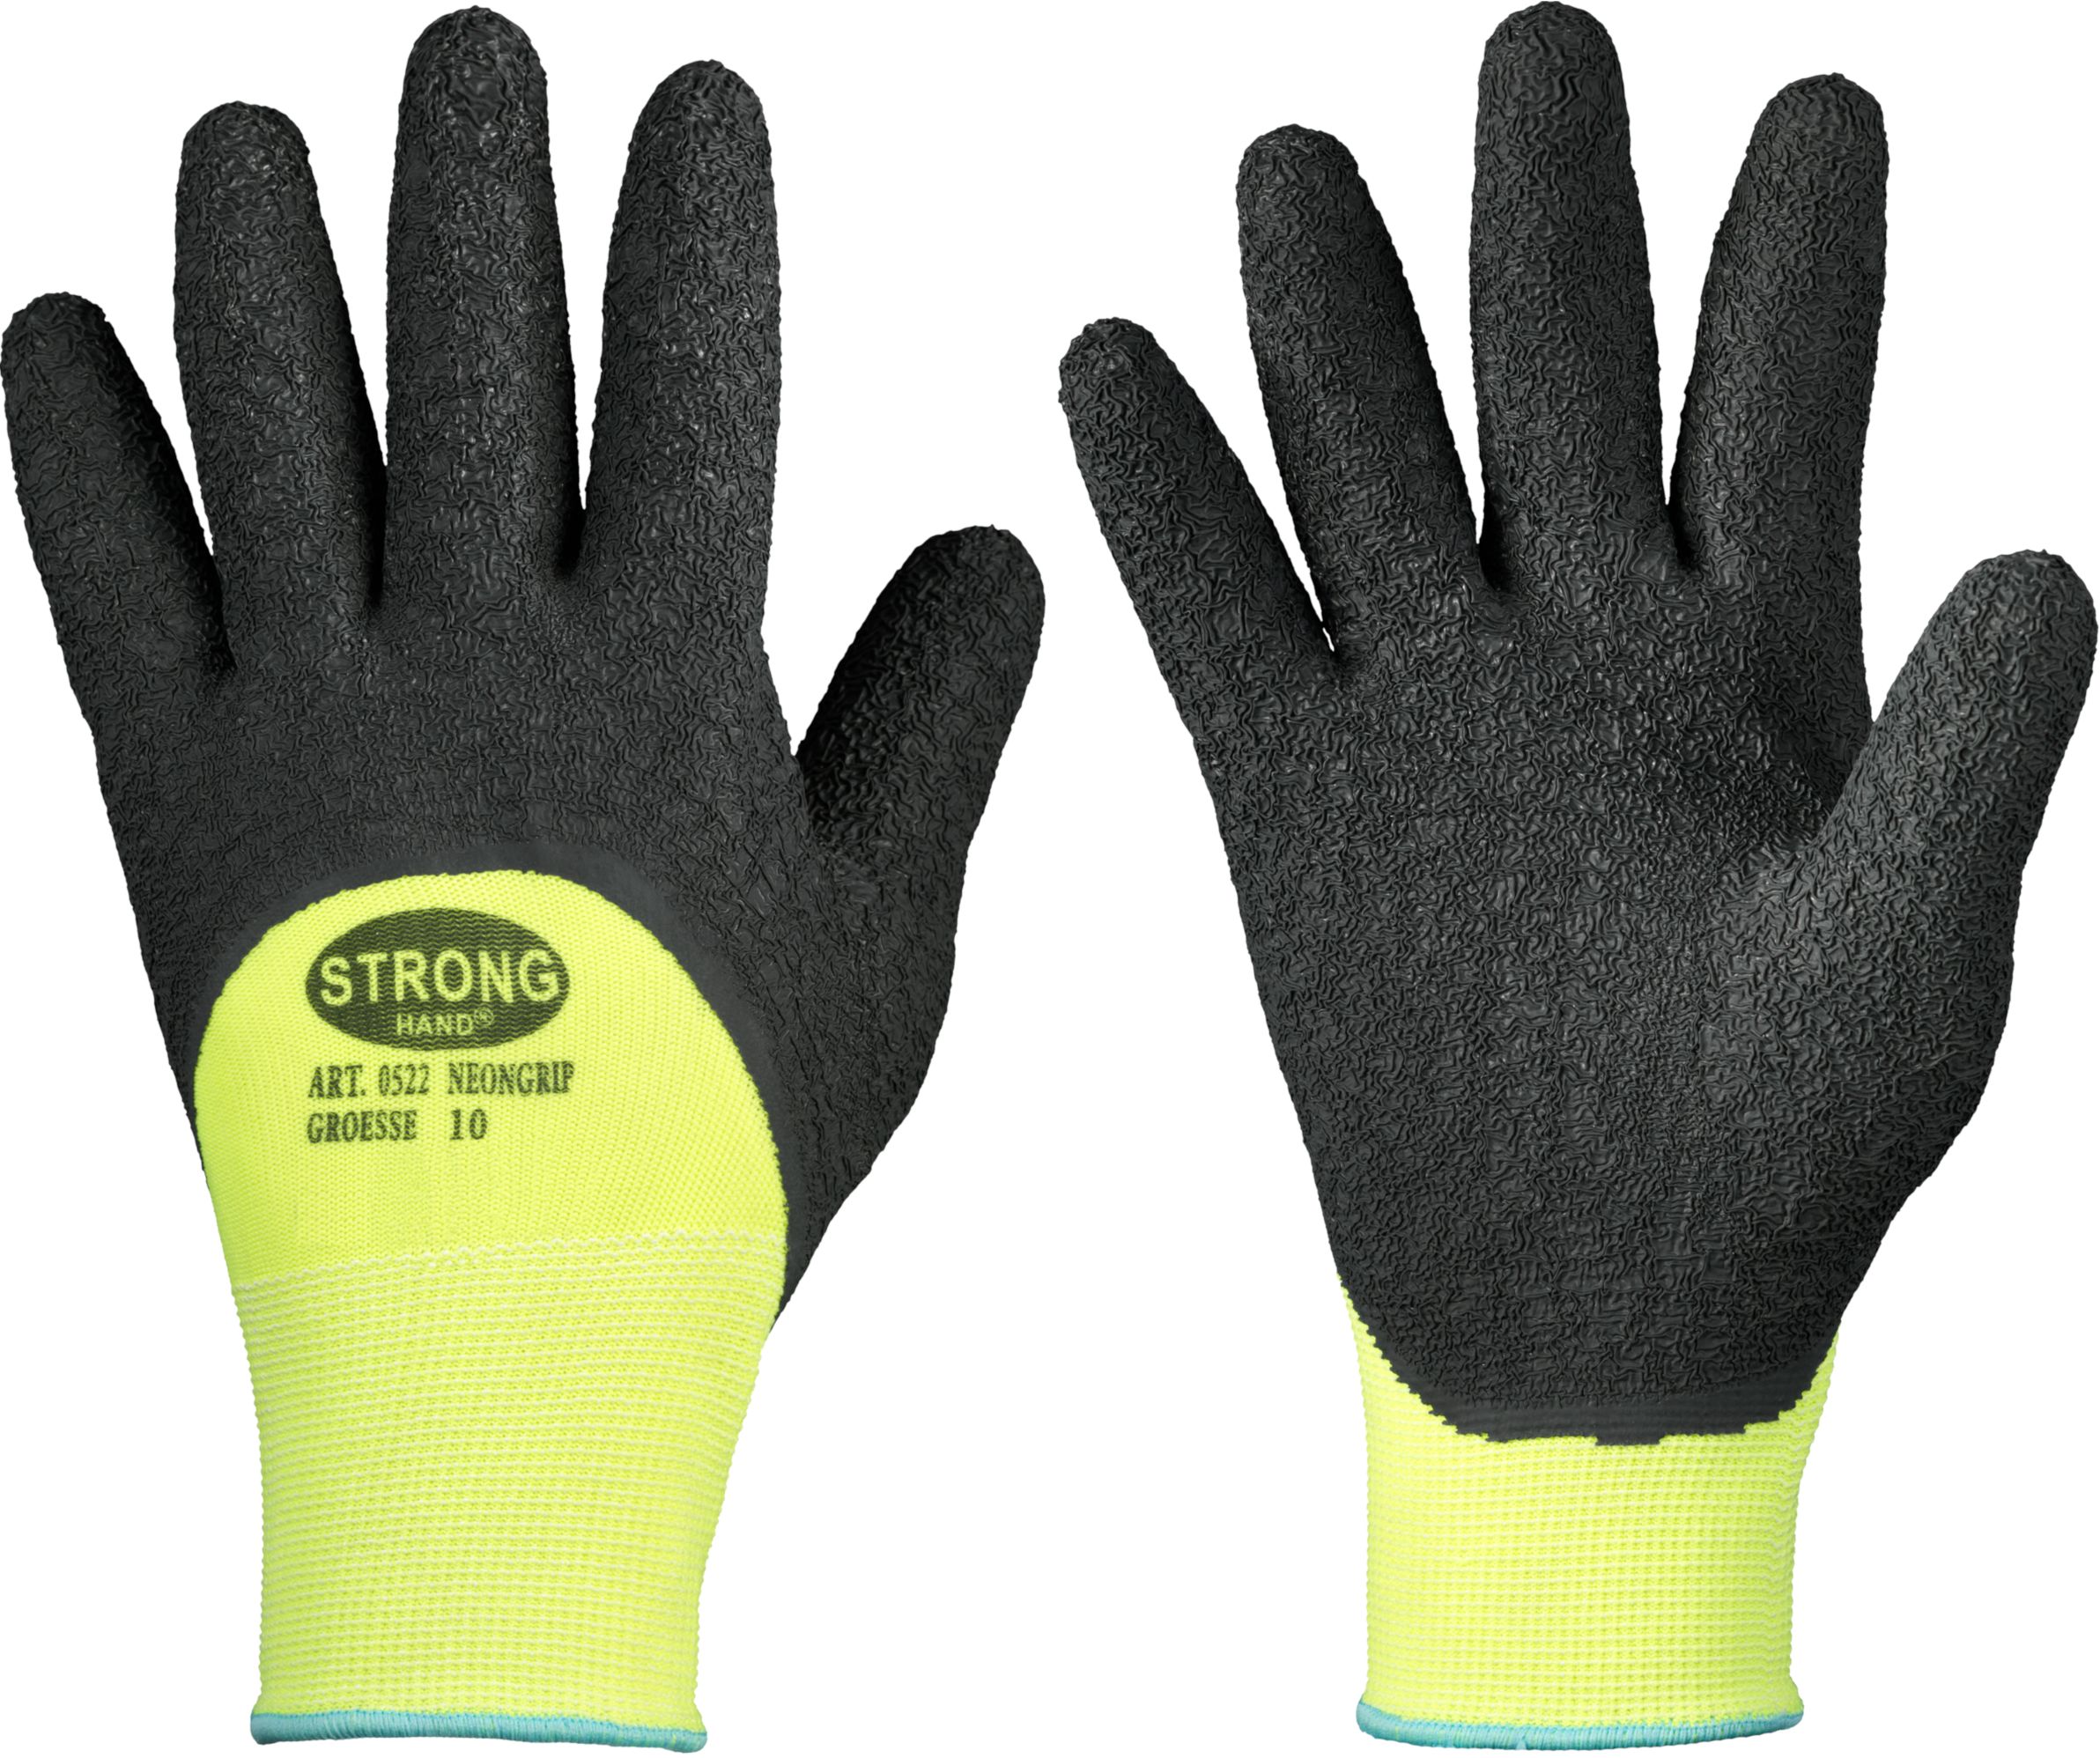 F-STRONGHAND, Latex, Arbeits-Handschuhe,  *NEONGRIP*, schwarz, VE = 12 Paar